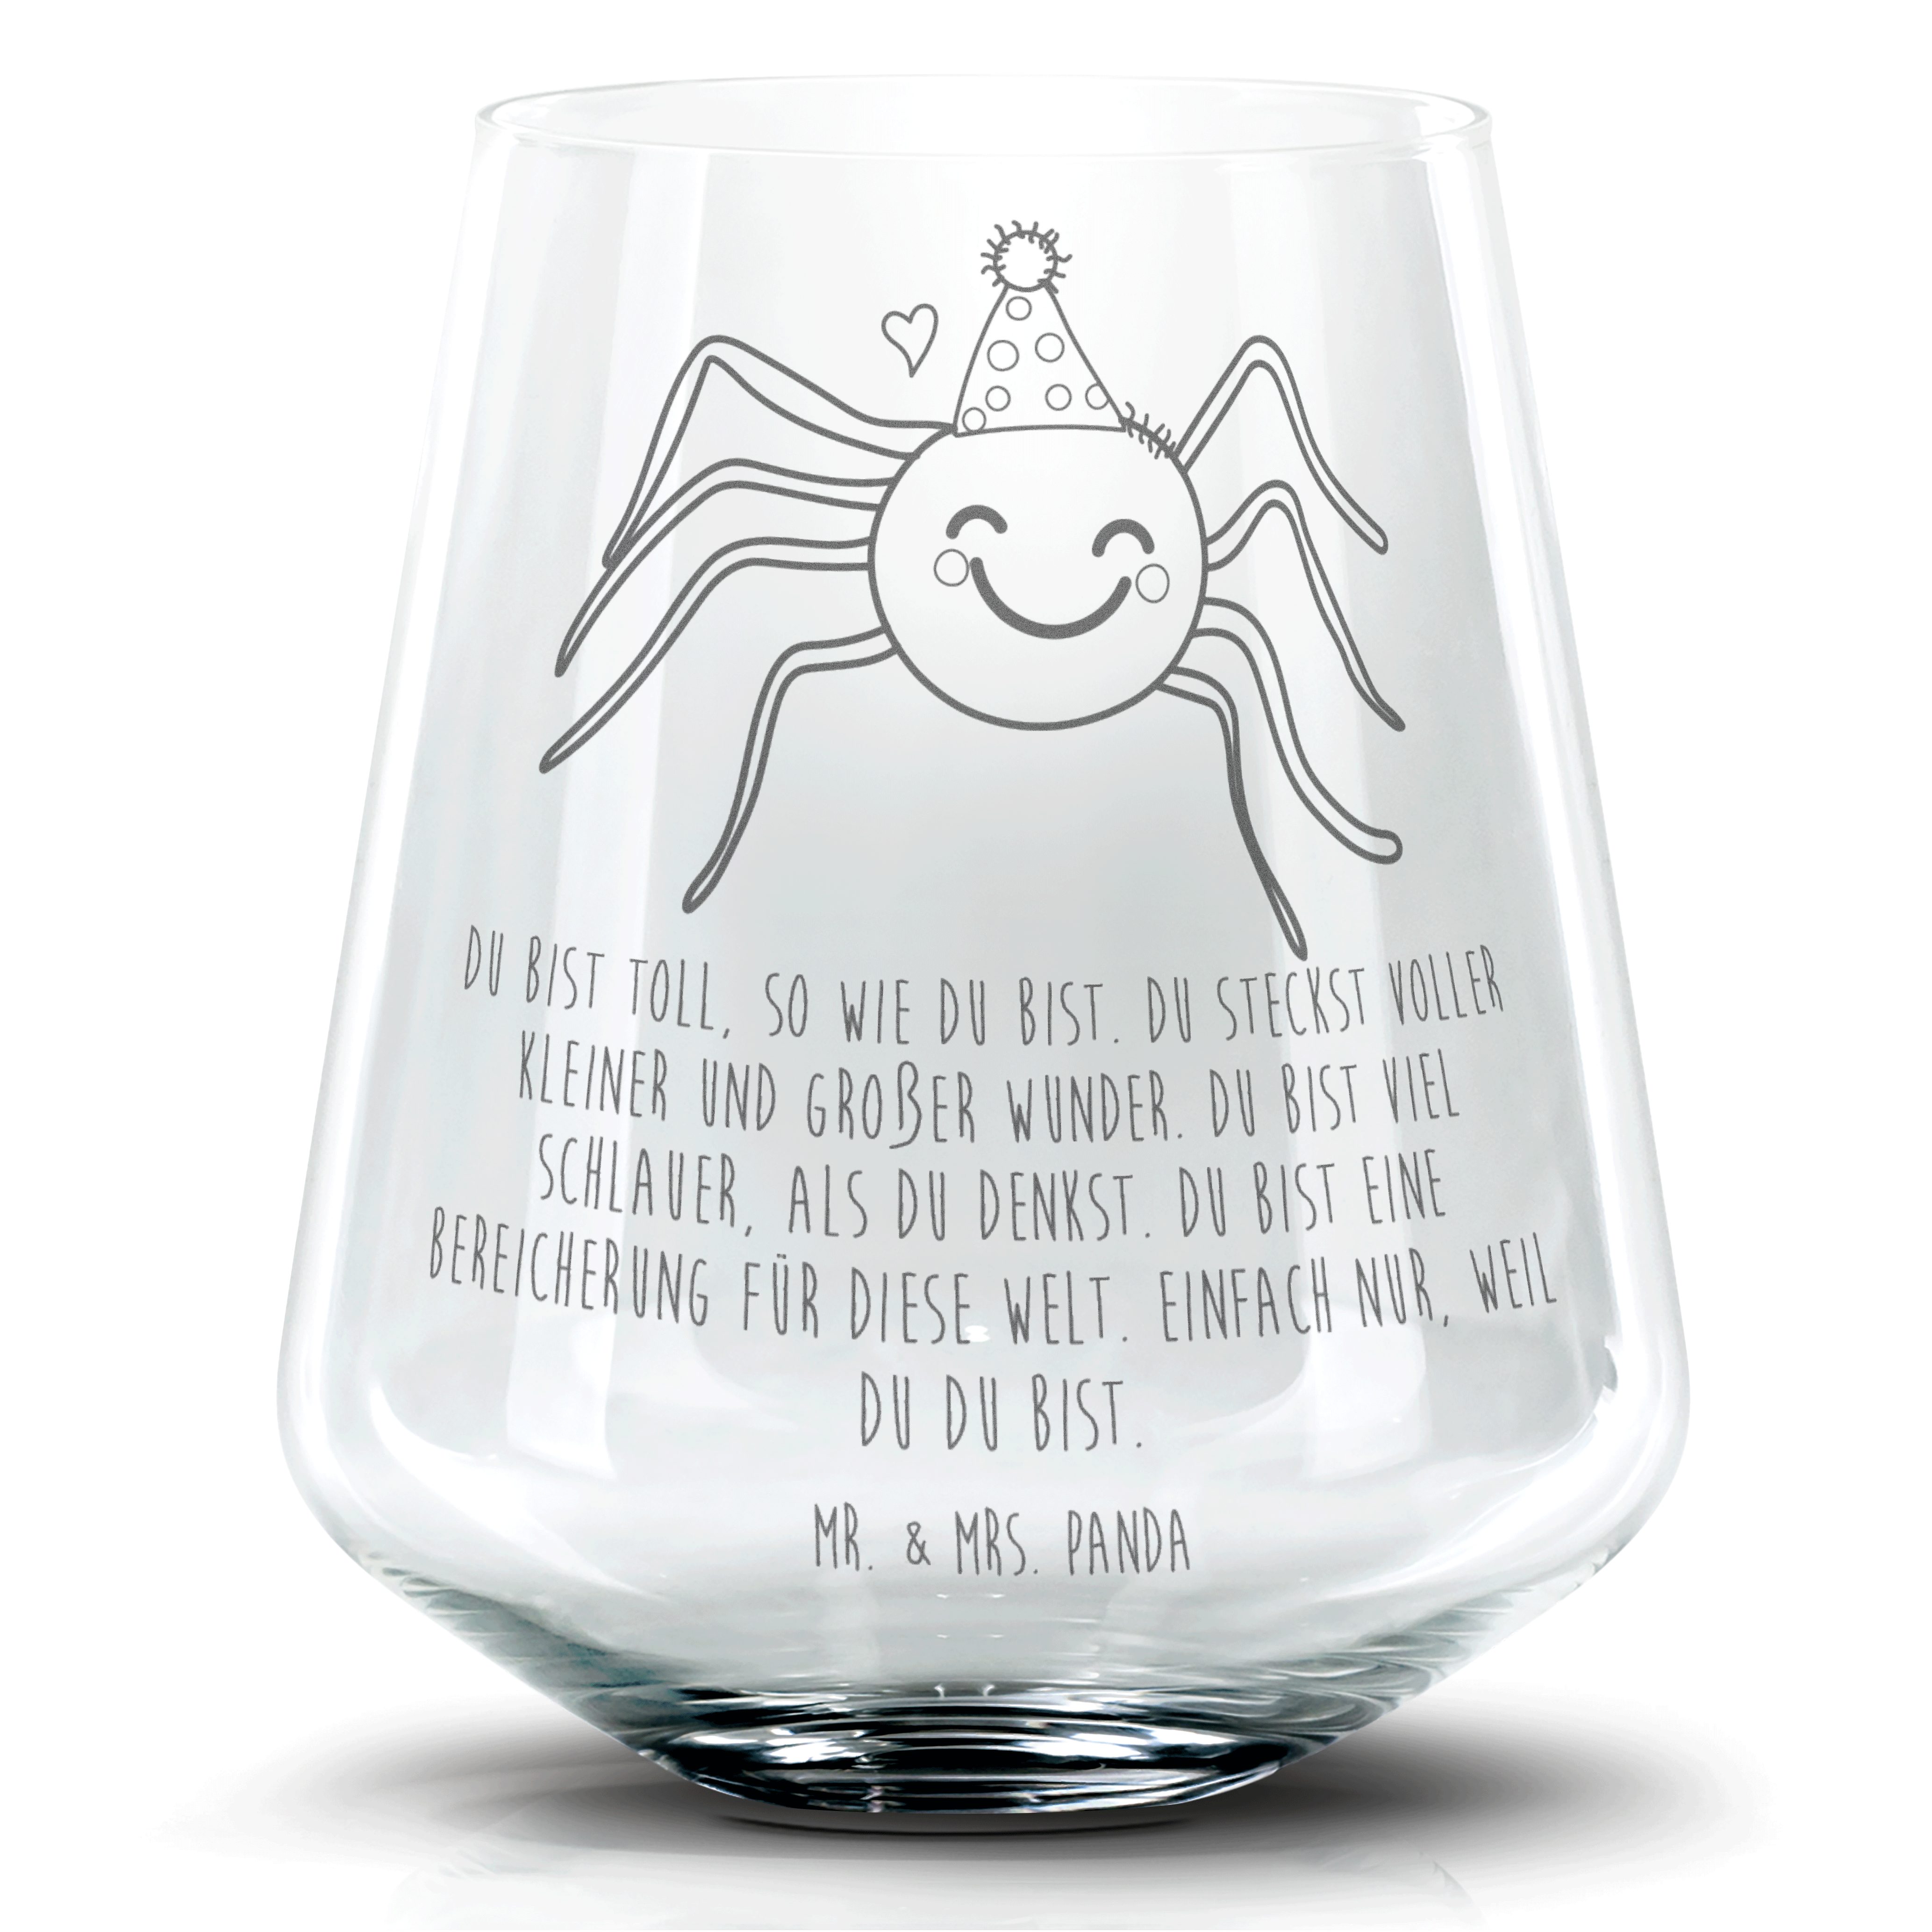 Mr. & Mrs. Panda Cocktailglas Spinne Agathe Party - Transparent - Geschenk, Motivation, Wunder, Coc, Premium Glas, Personalisierbar